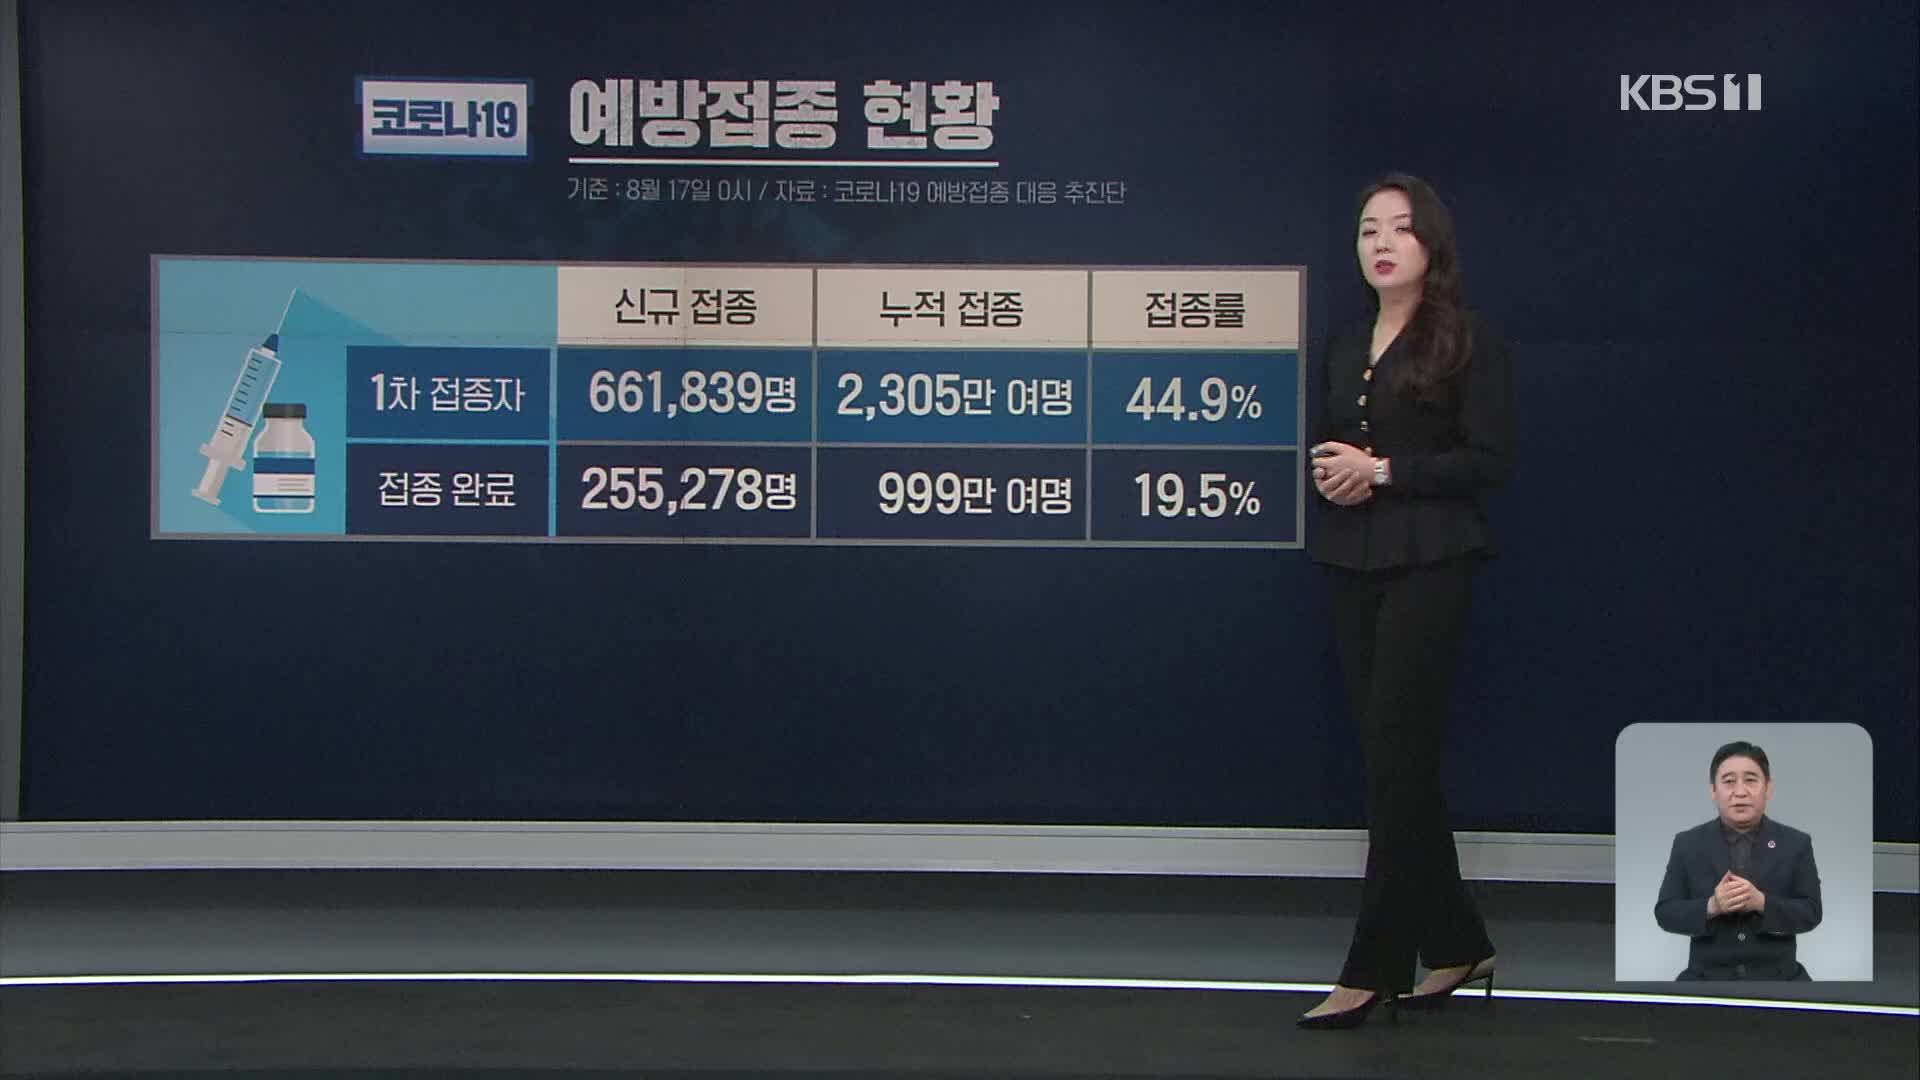 코로나19 신규 확잔자 1,373명…6주 연속 네 자릿수